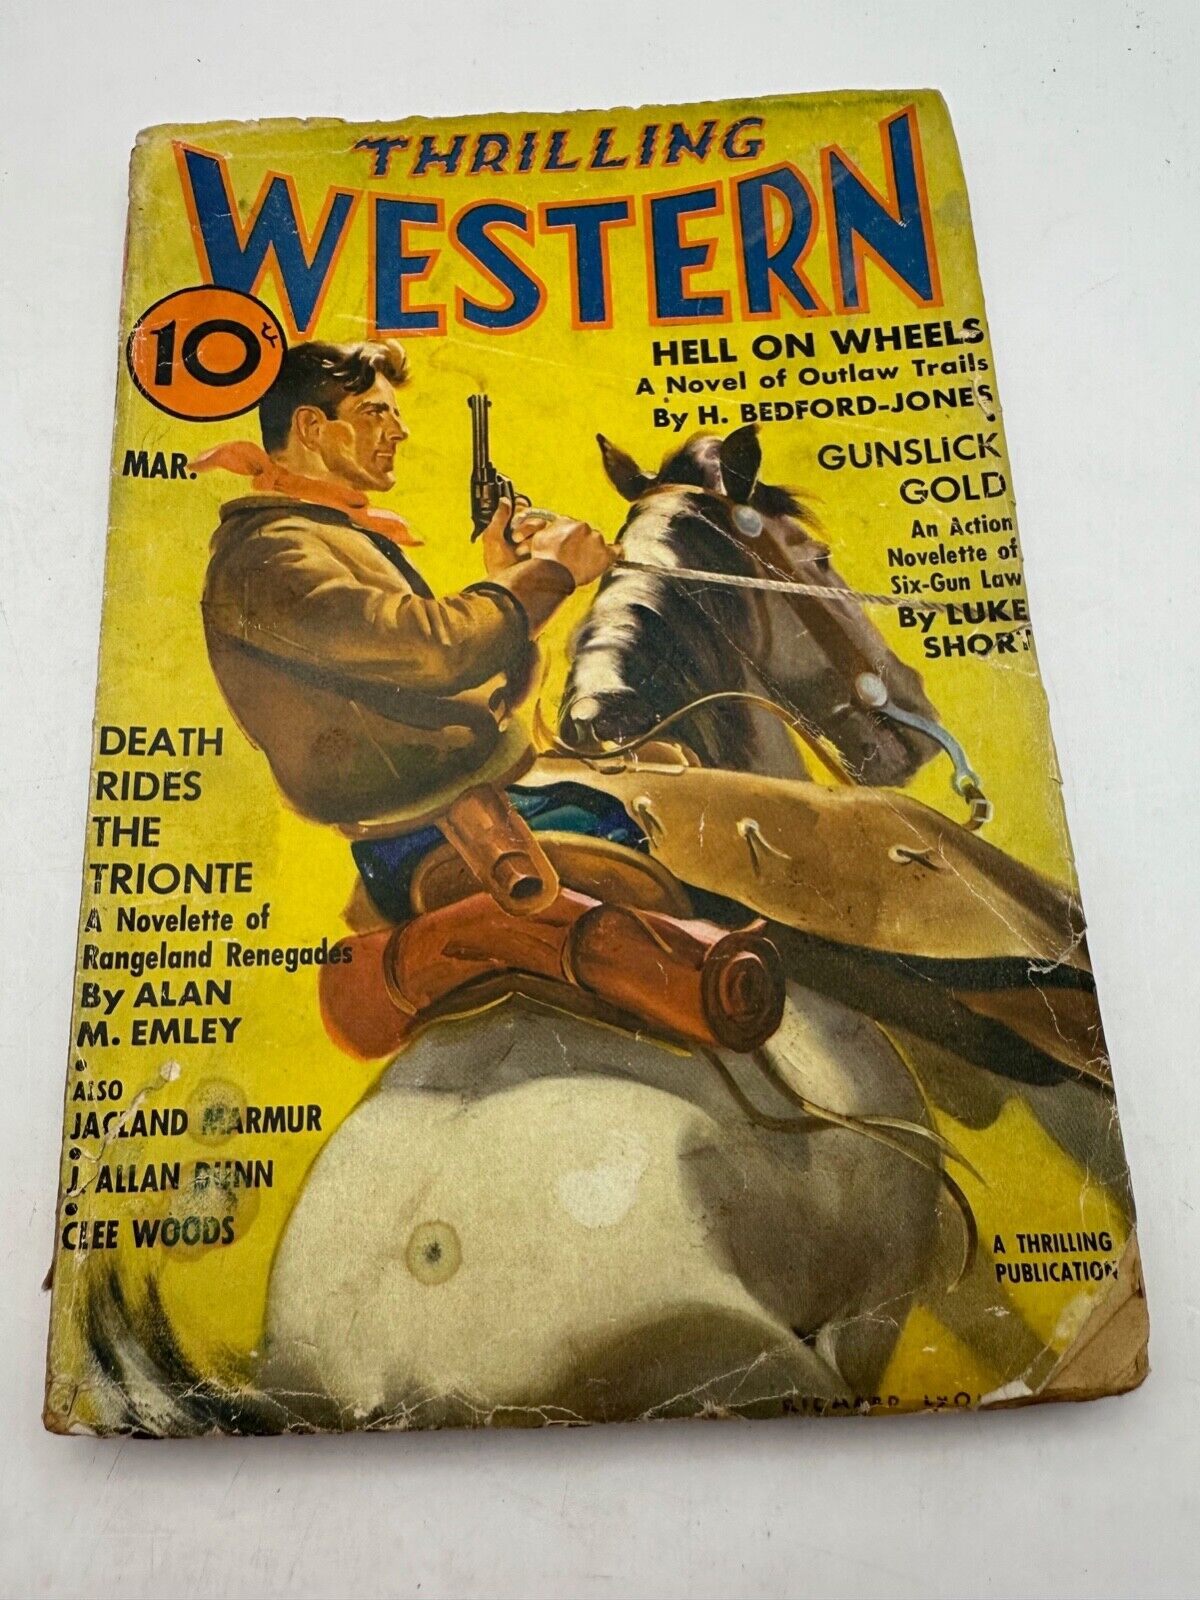 Thrilling Western, vol. 12, #3